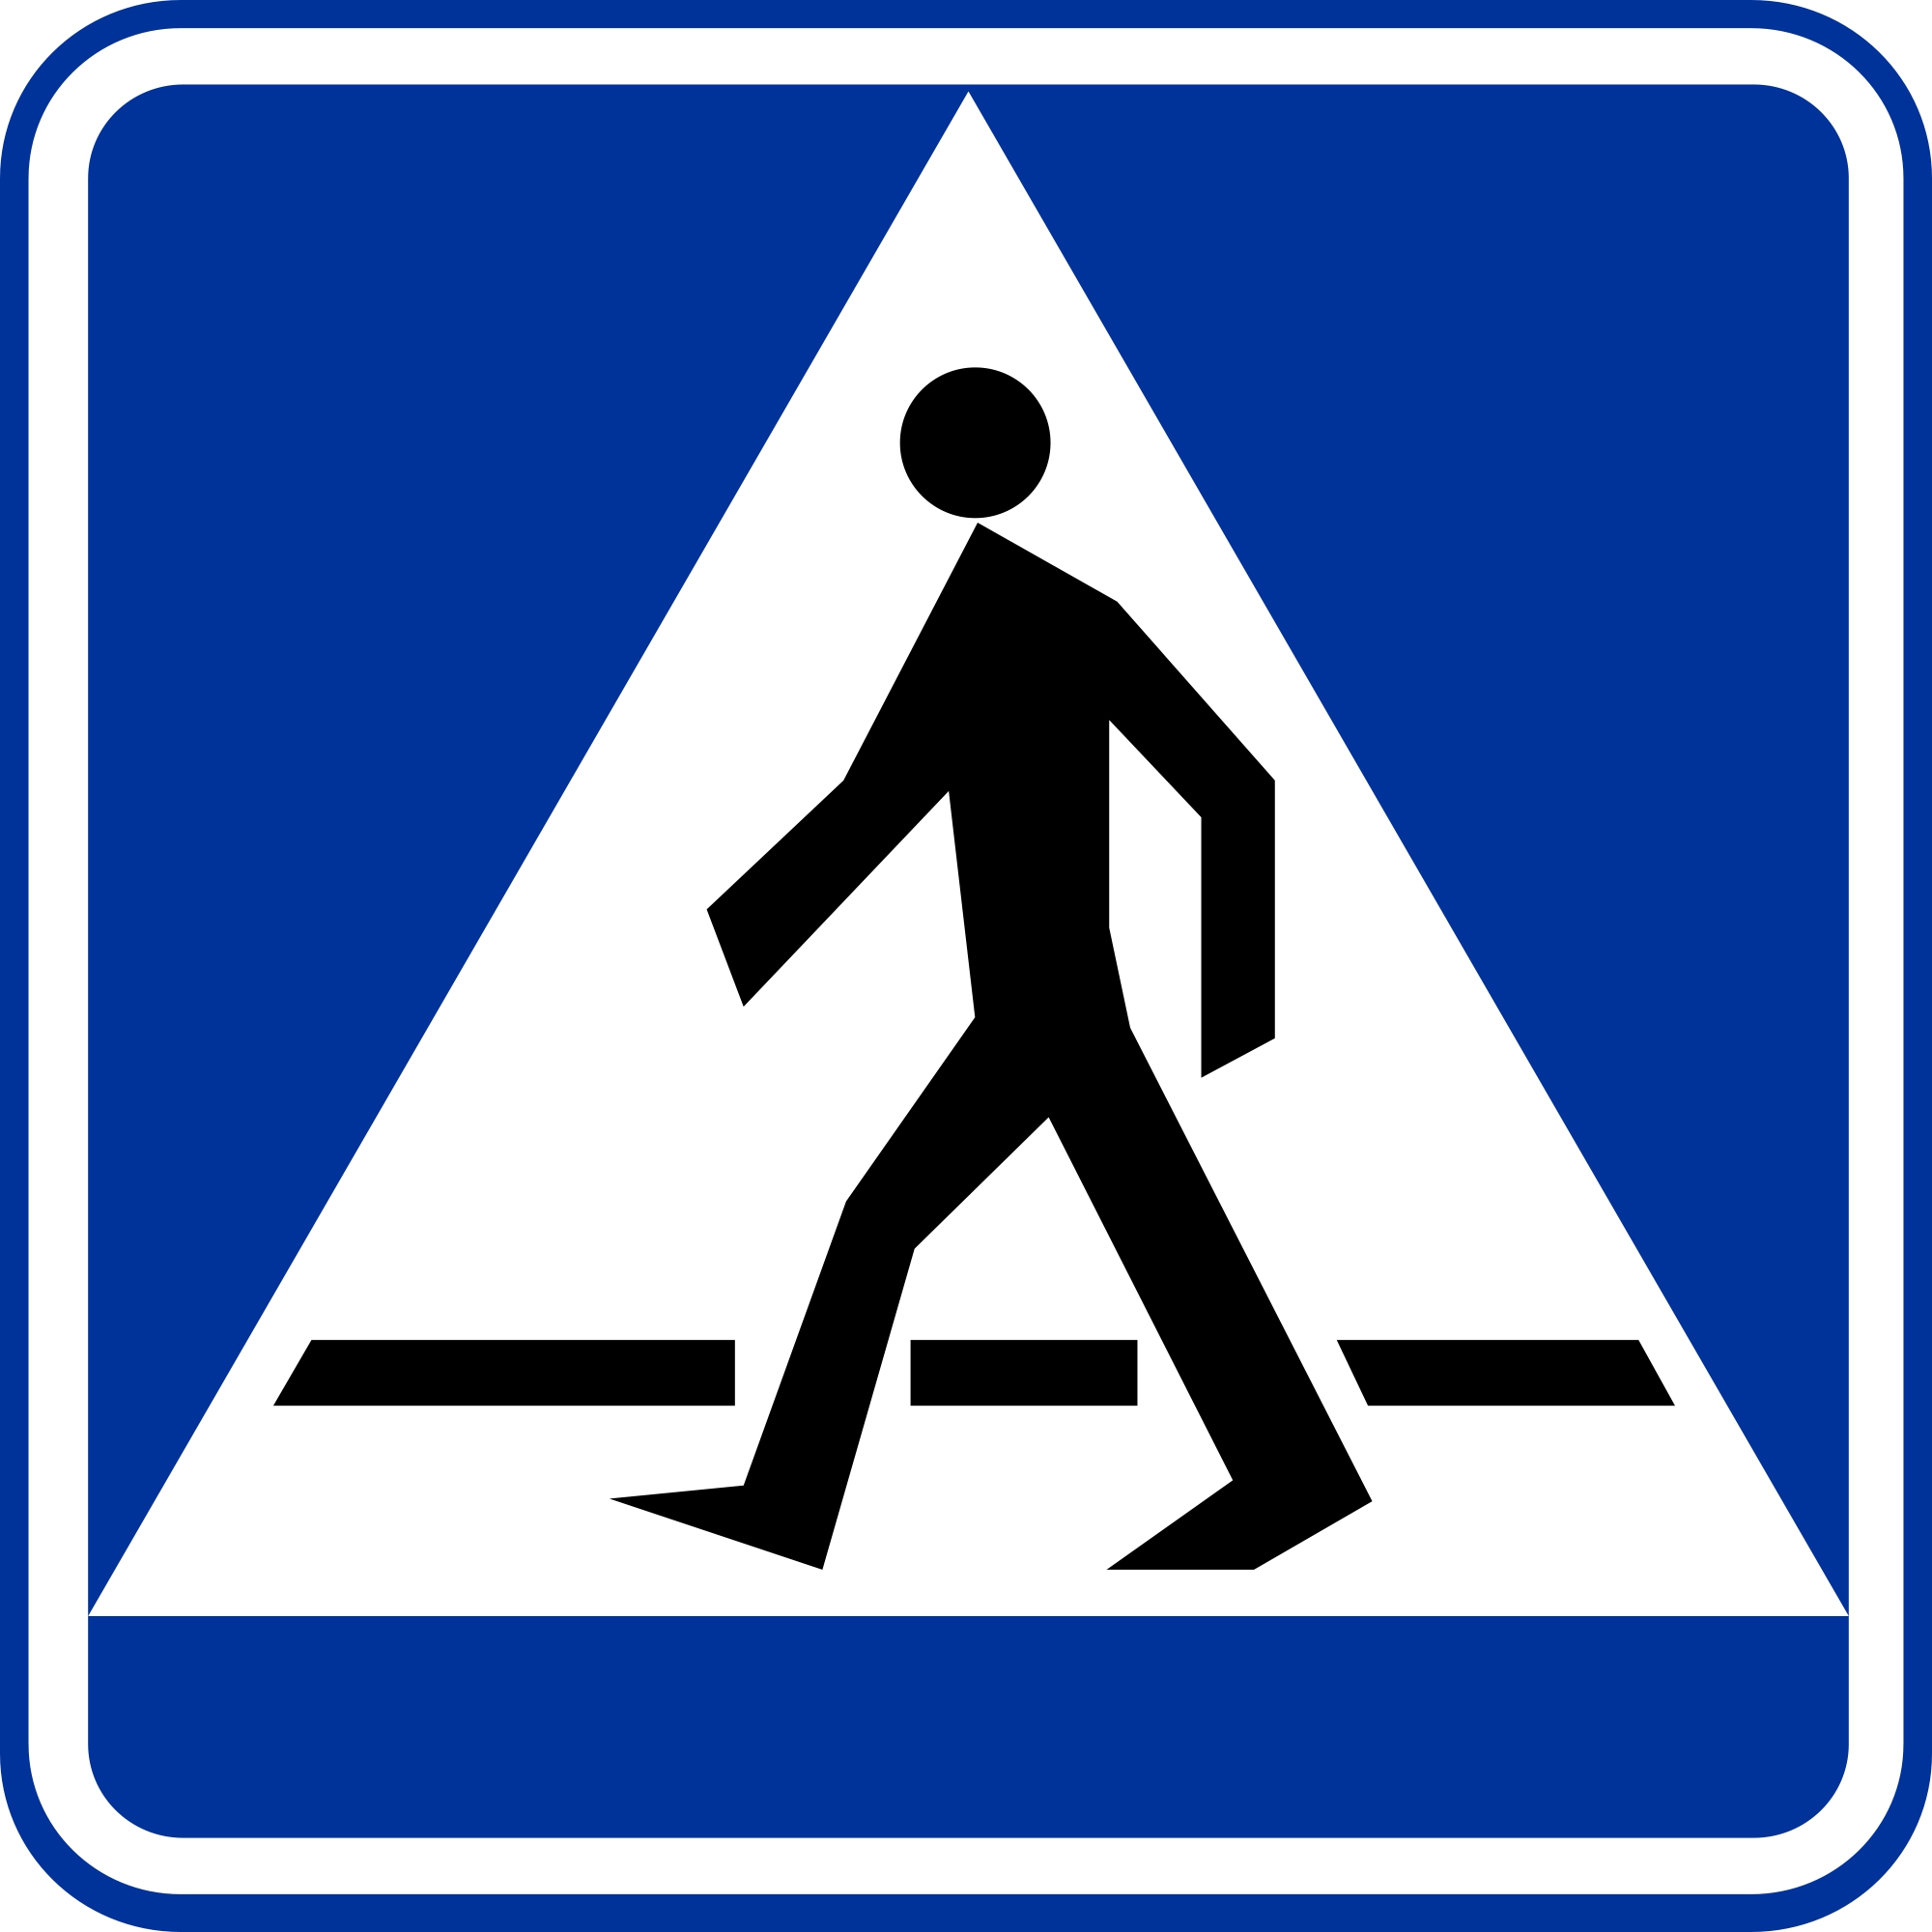 Знаки для пешеходов